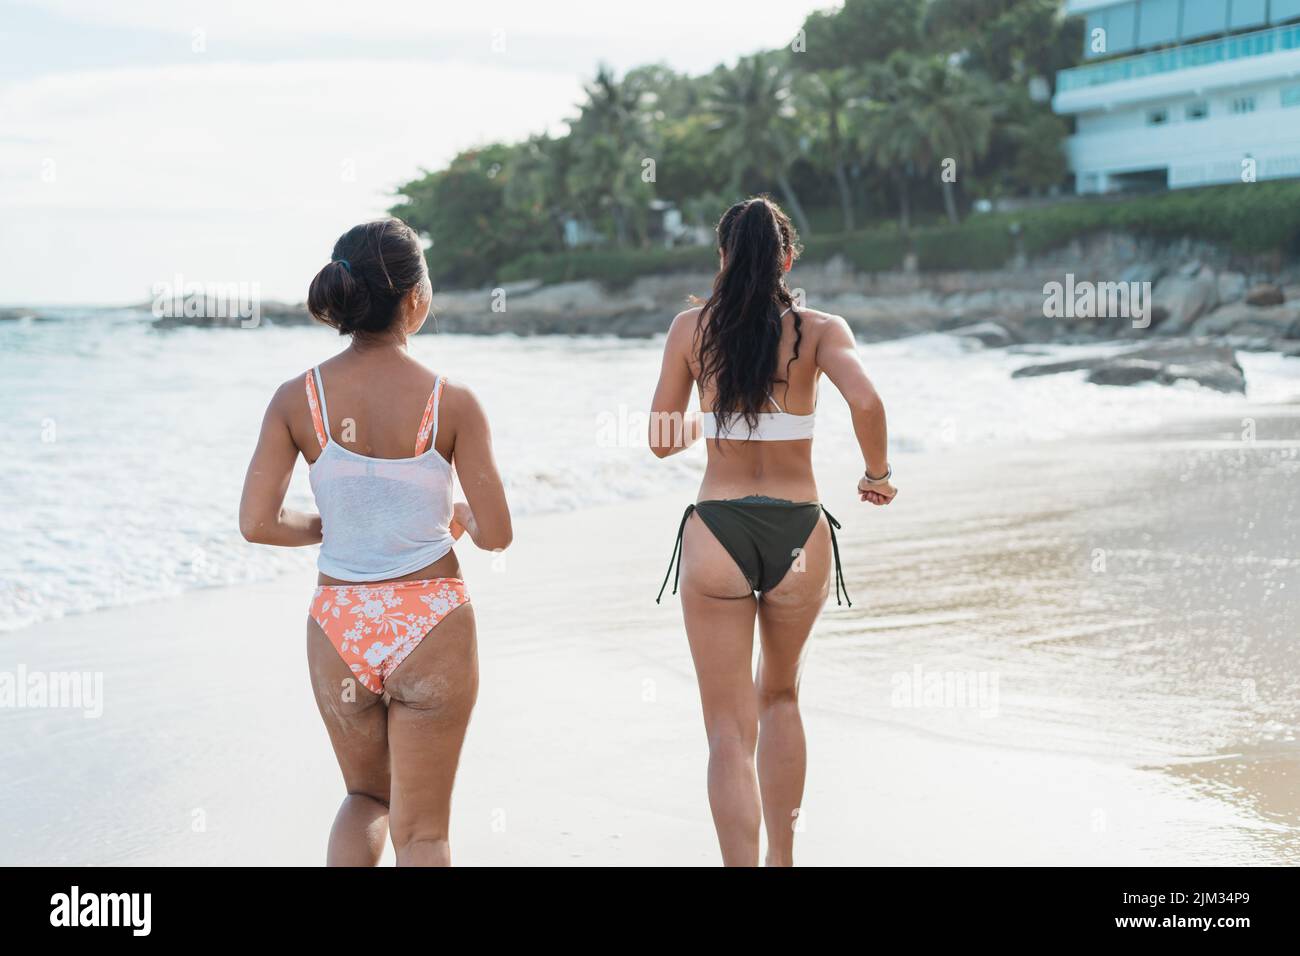 Rückansicht der schönen 2 Frauen im Bikini, die am Strand zum Meer laufen. Hübsche junge asiatische Reisende in Badekleidung, die Spaß haben, während sie am Wochenende tropischen Urlaub genießen Stockfoto